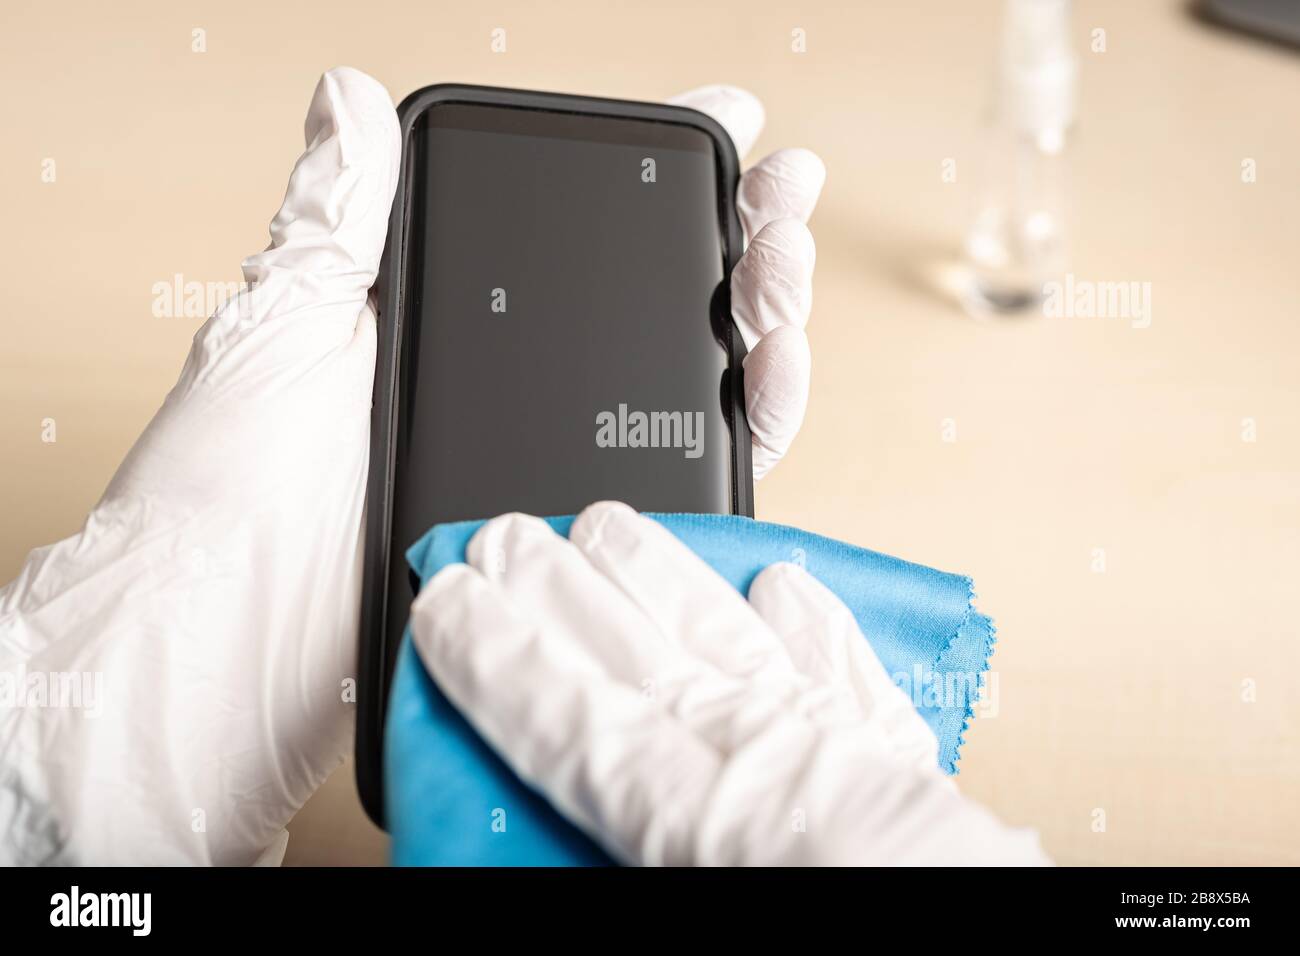 Limpieza de la pantalla del smartphone con alcohol. Concepto de limpieza de pantalla sucia para la prevención de enfermedades del virus COVID-19 Coronavirus Foto de stock